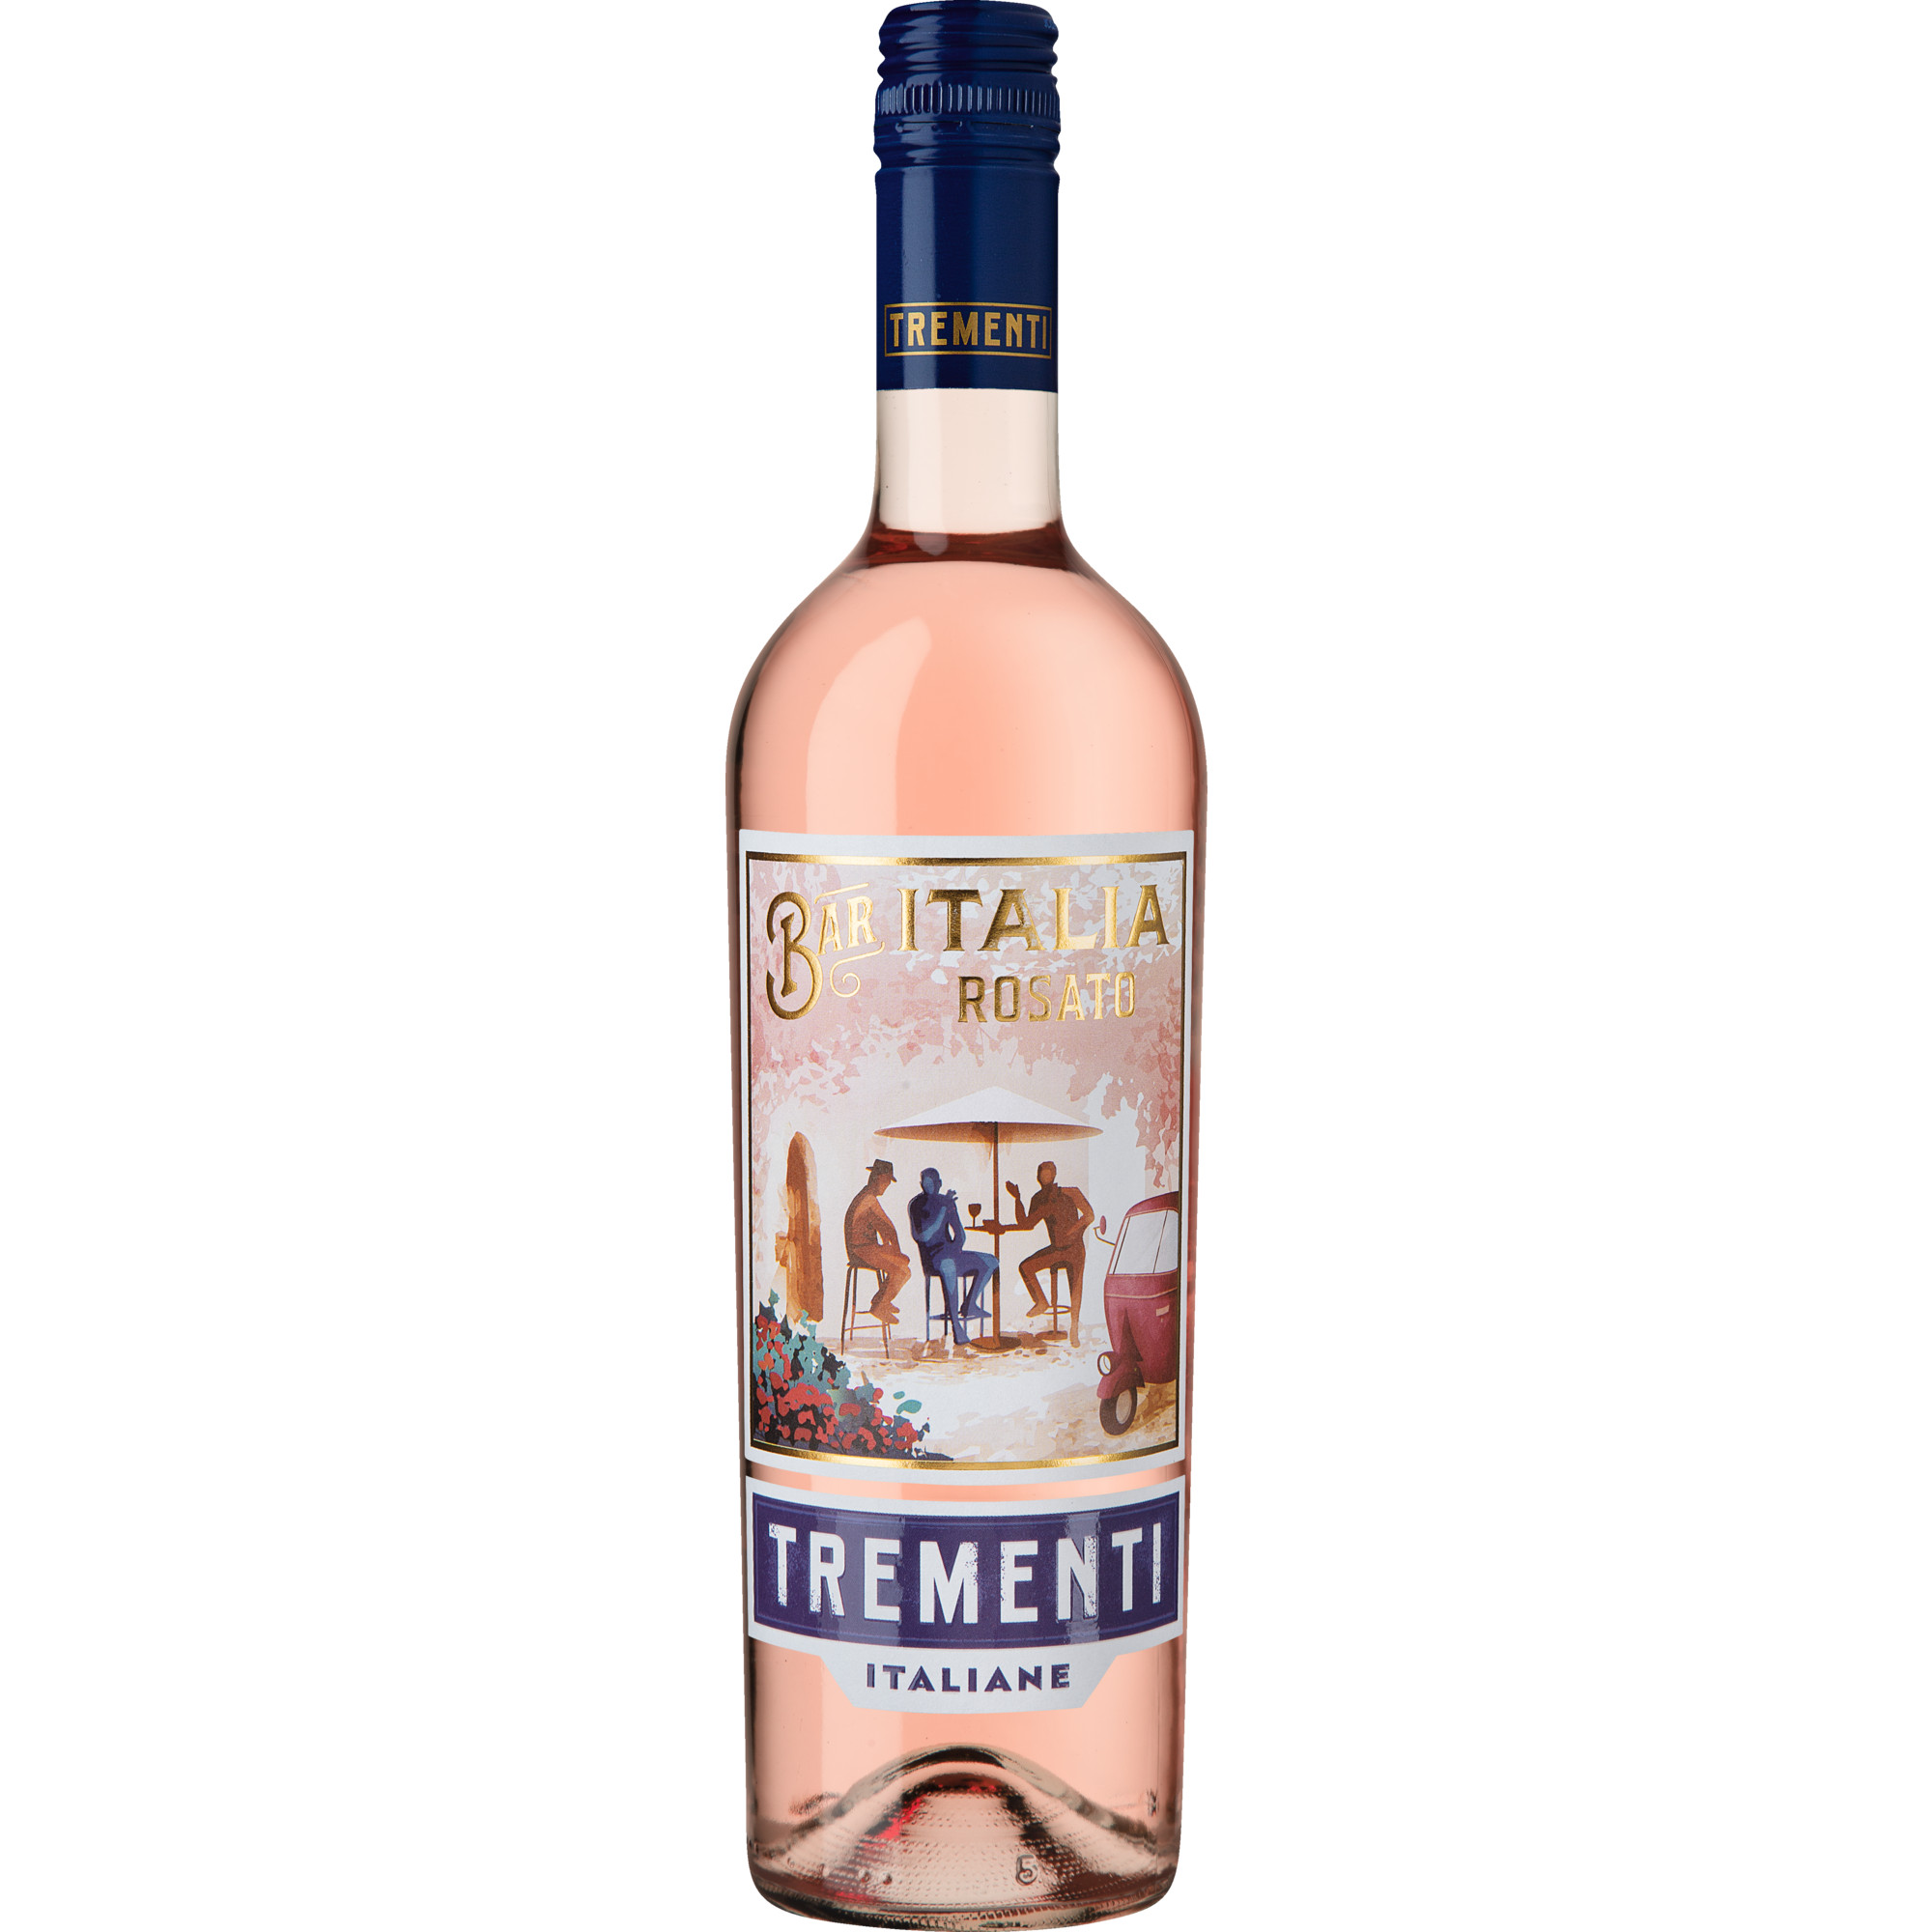 Trementi Rosato, Vino d%27Italia, Vino da Tavola, 2021, Roséwein Orion Wines S.C.A.R.L., 38015 Lavis (TN), Italia; bottled by T.C. S.C.A. FO 11944 IT Hawesko DE